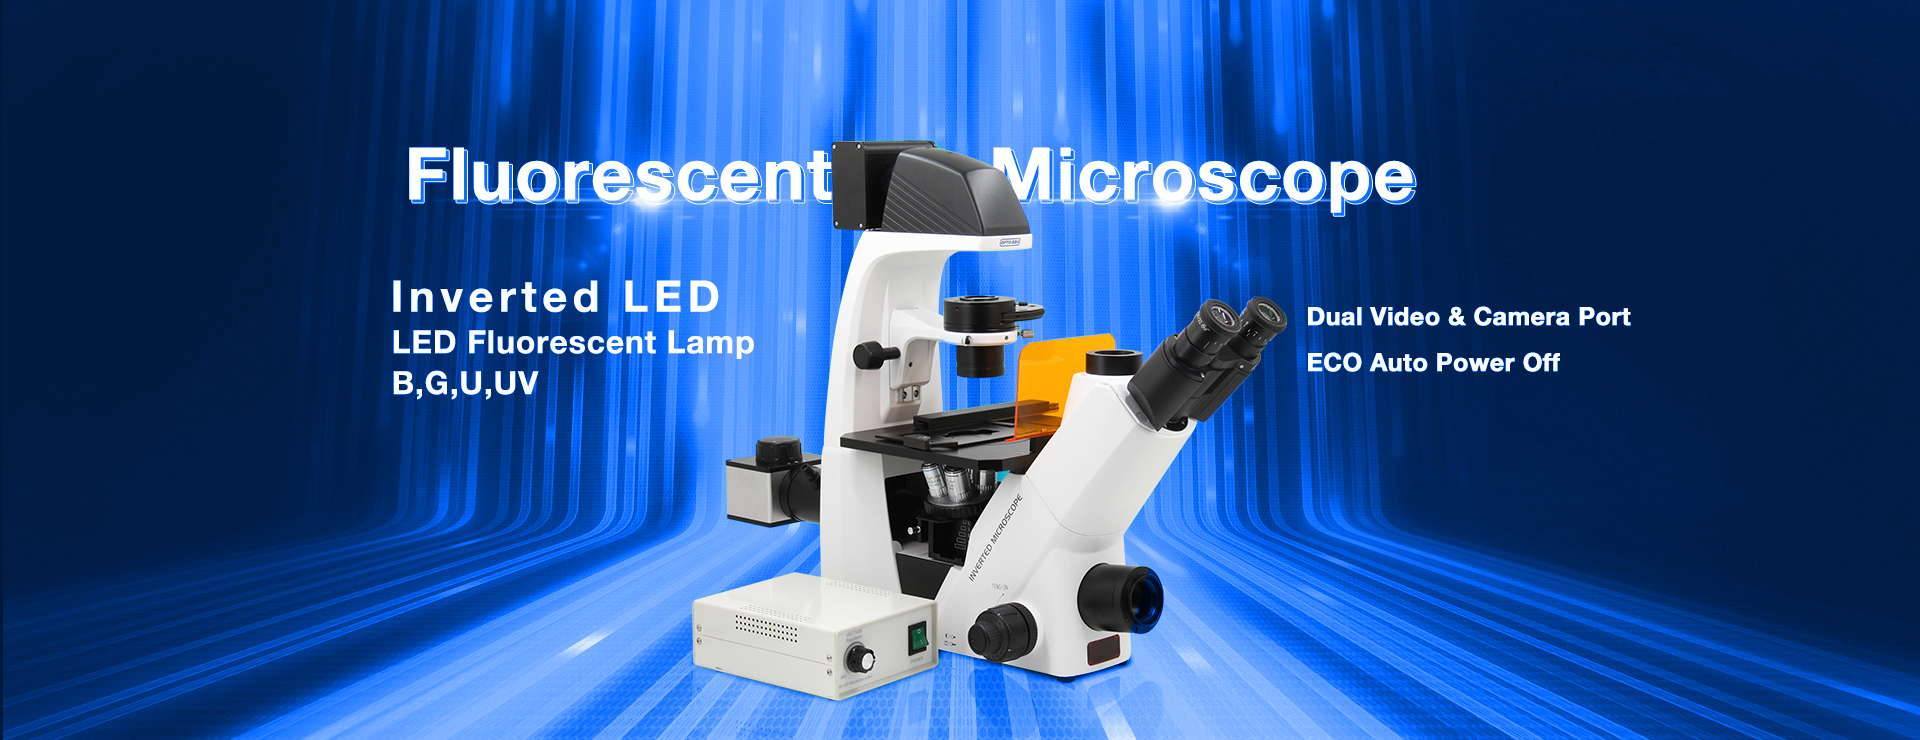 A16 Fluorescent microscope